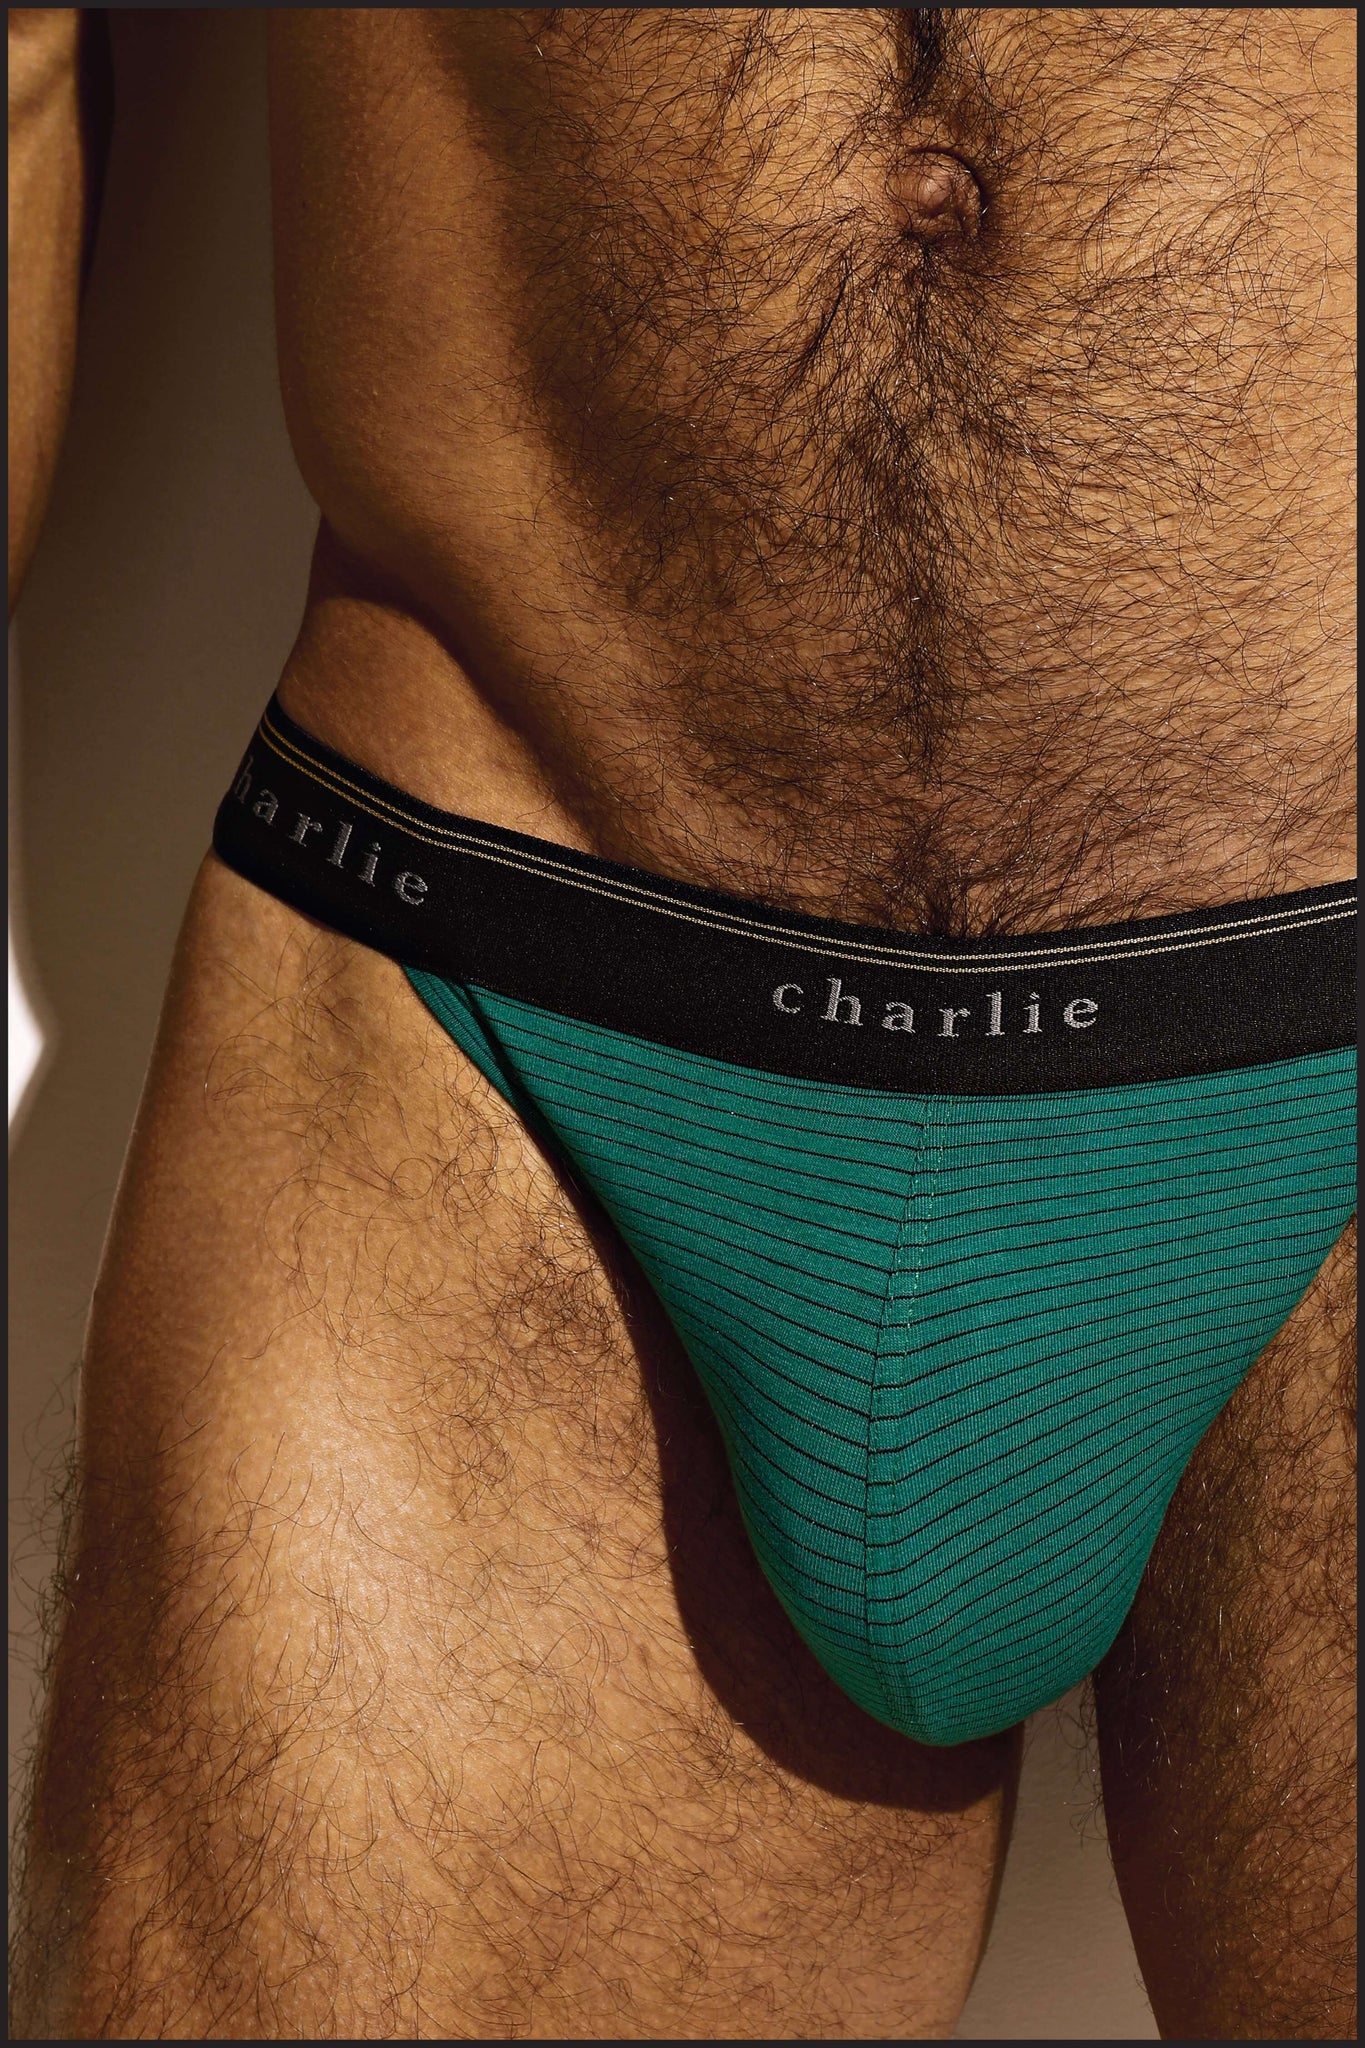 Charlie by Matthew Zink Vintage Microstripe Underwear Sport Brief